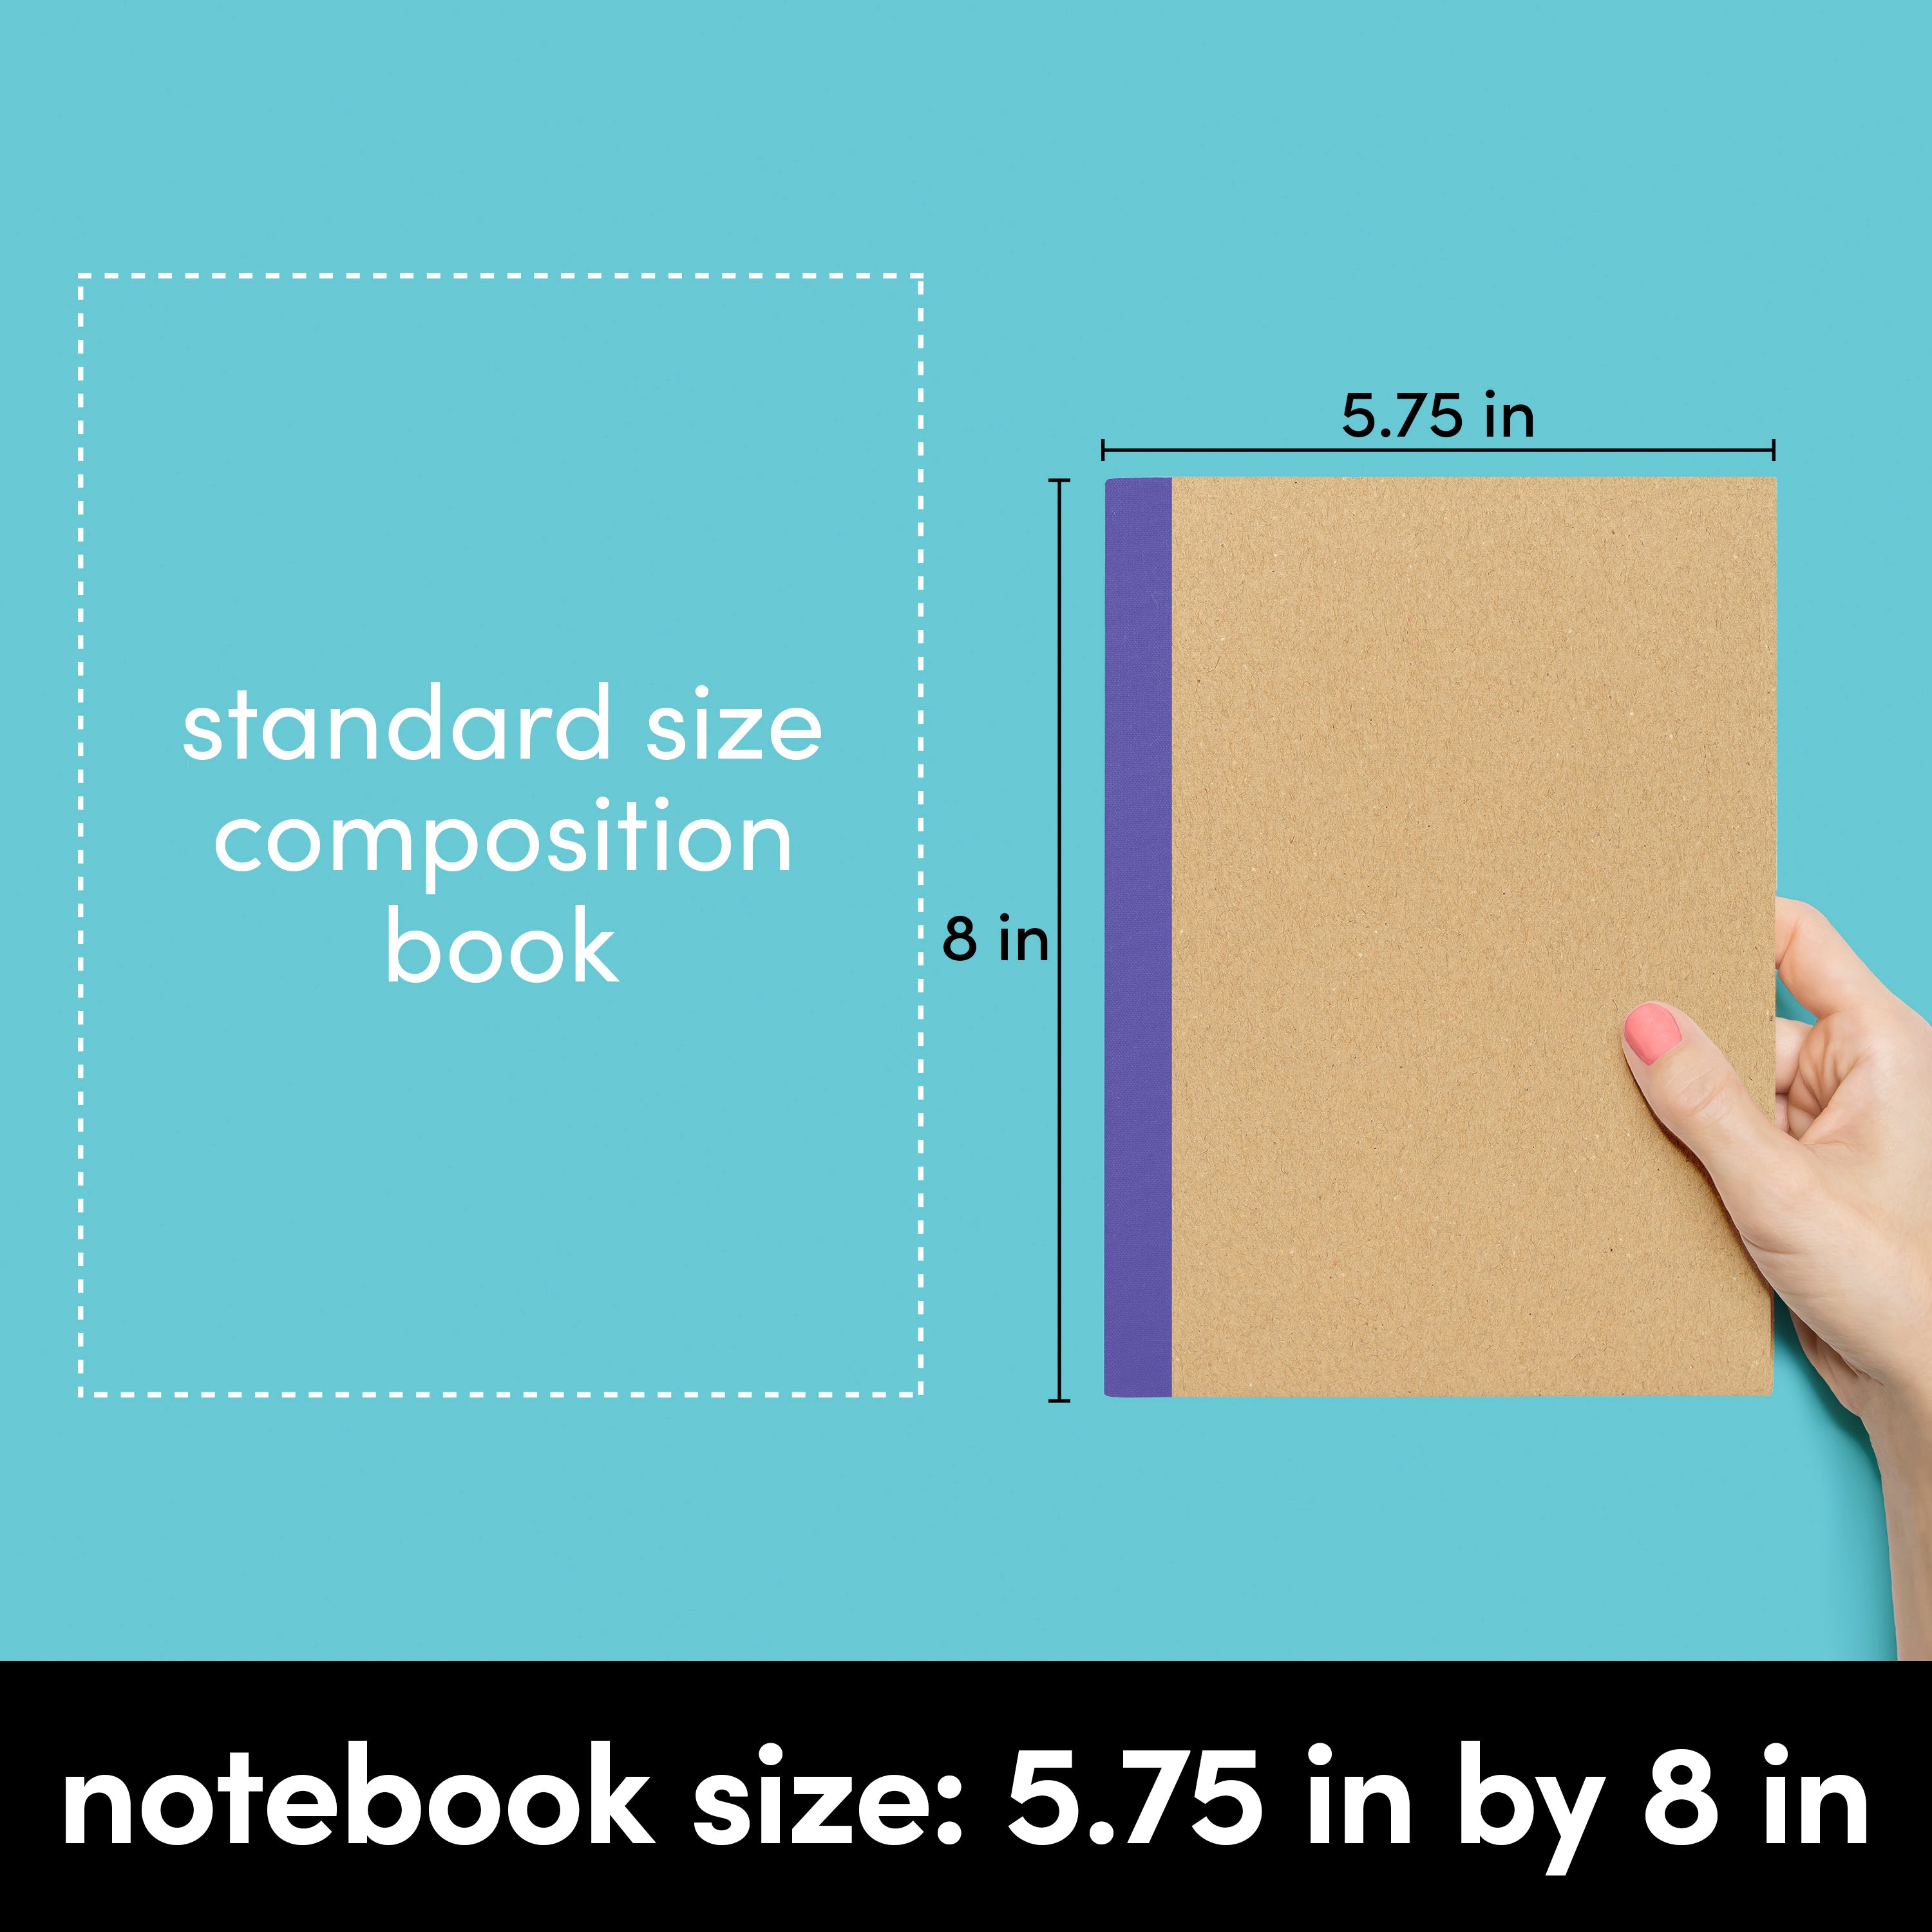 12 Pack Kraft Composition Notebook Journals